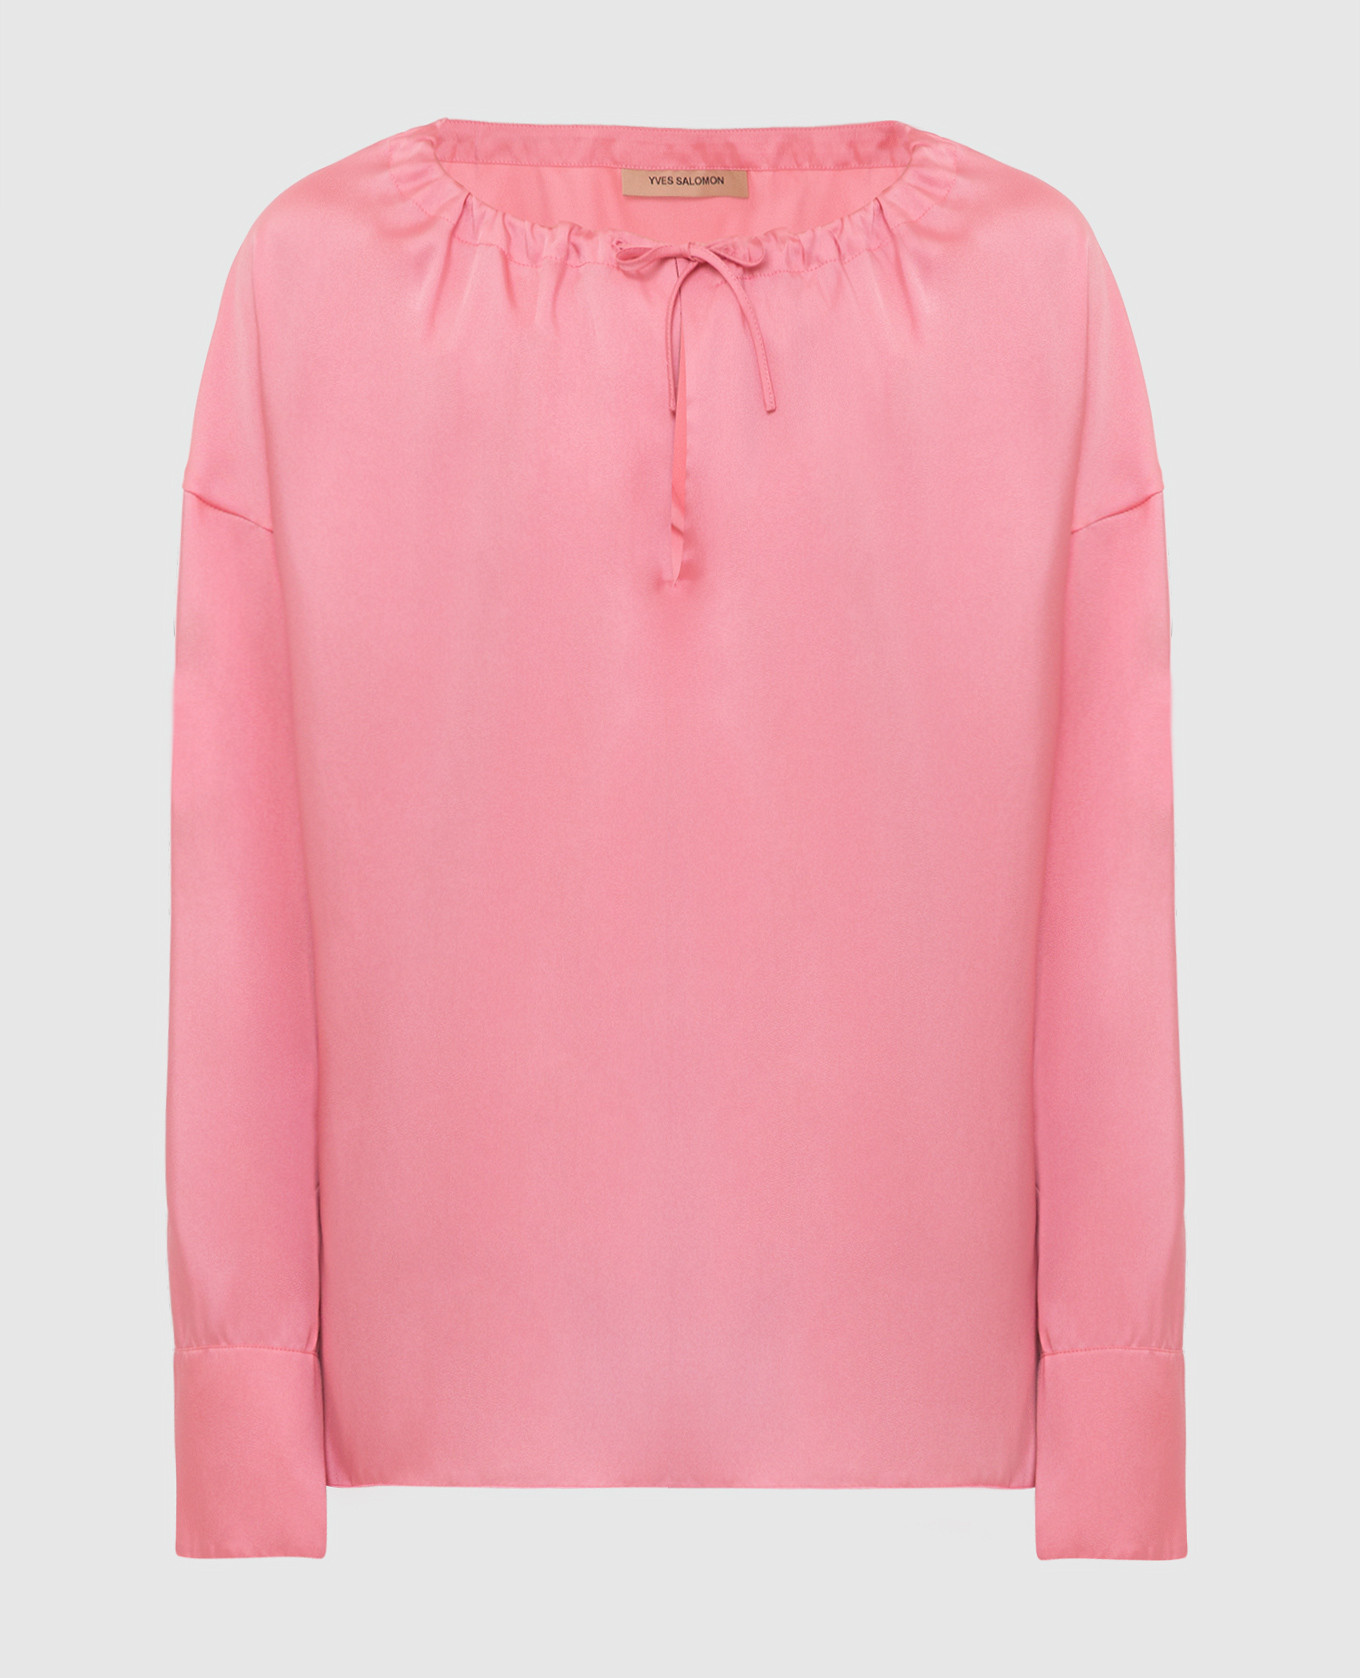 Розовая блуза